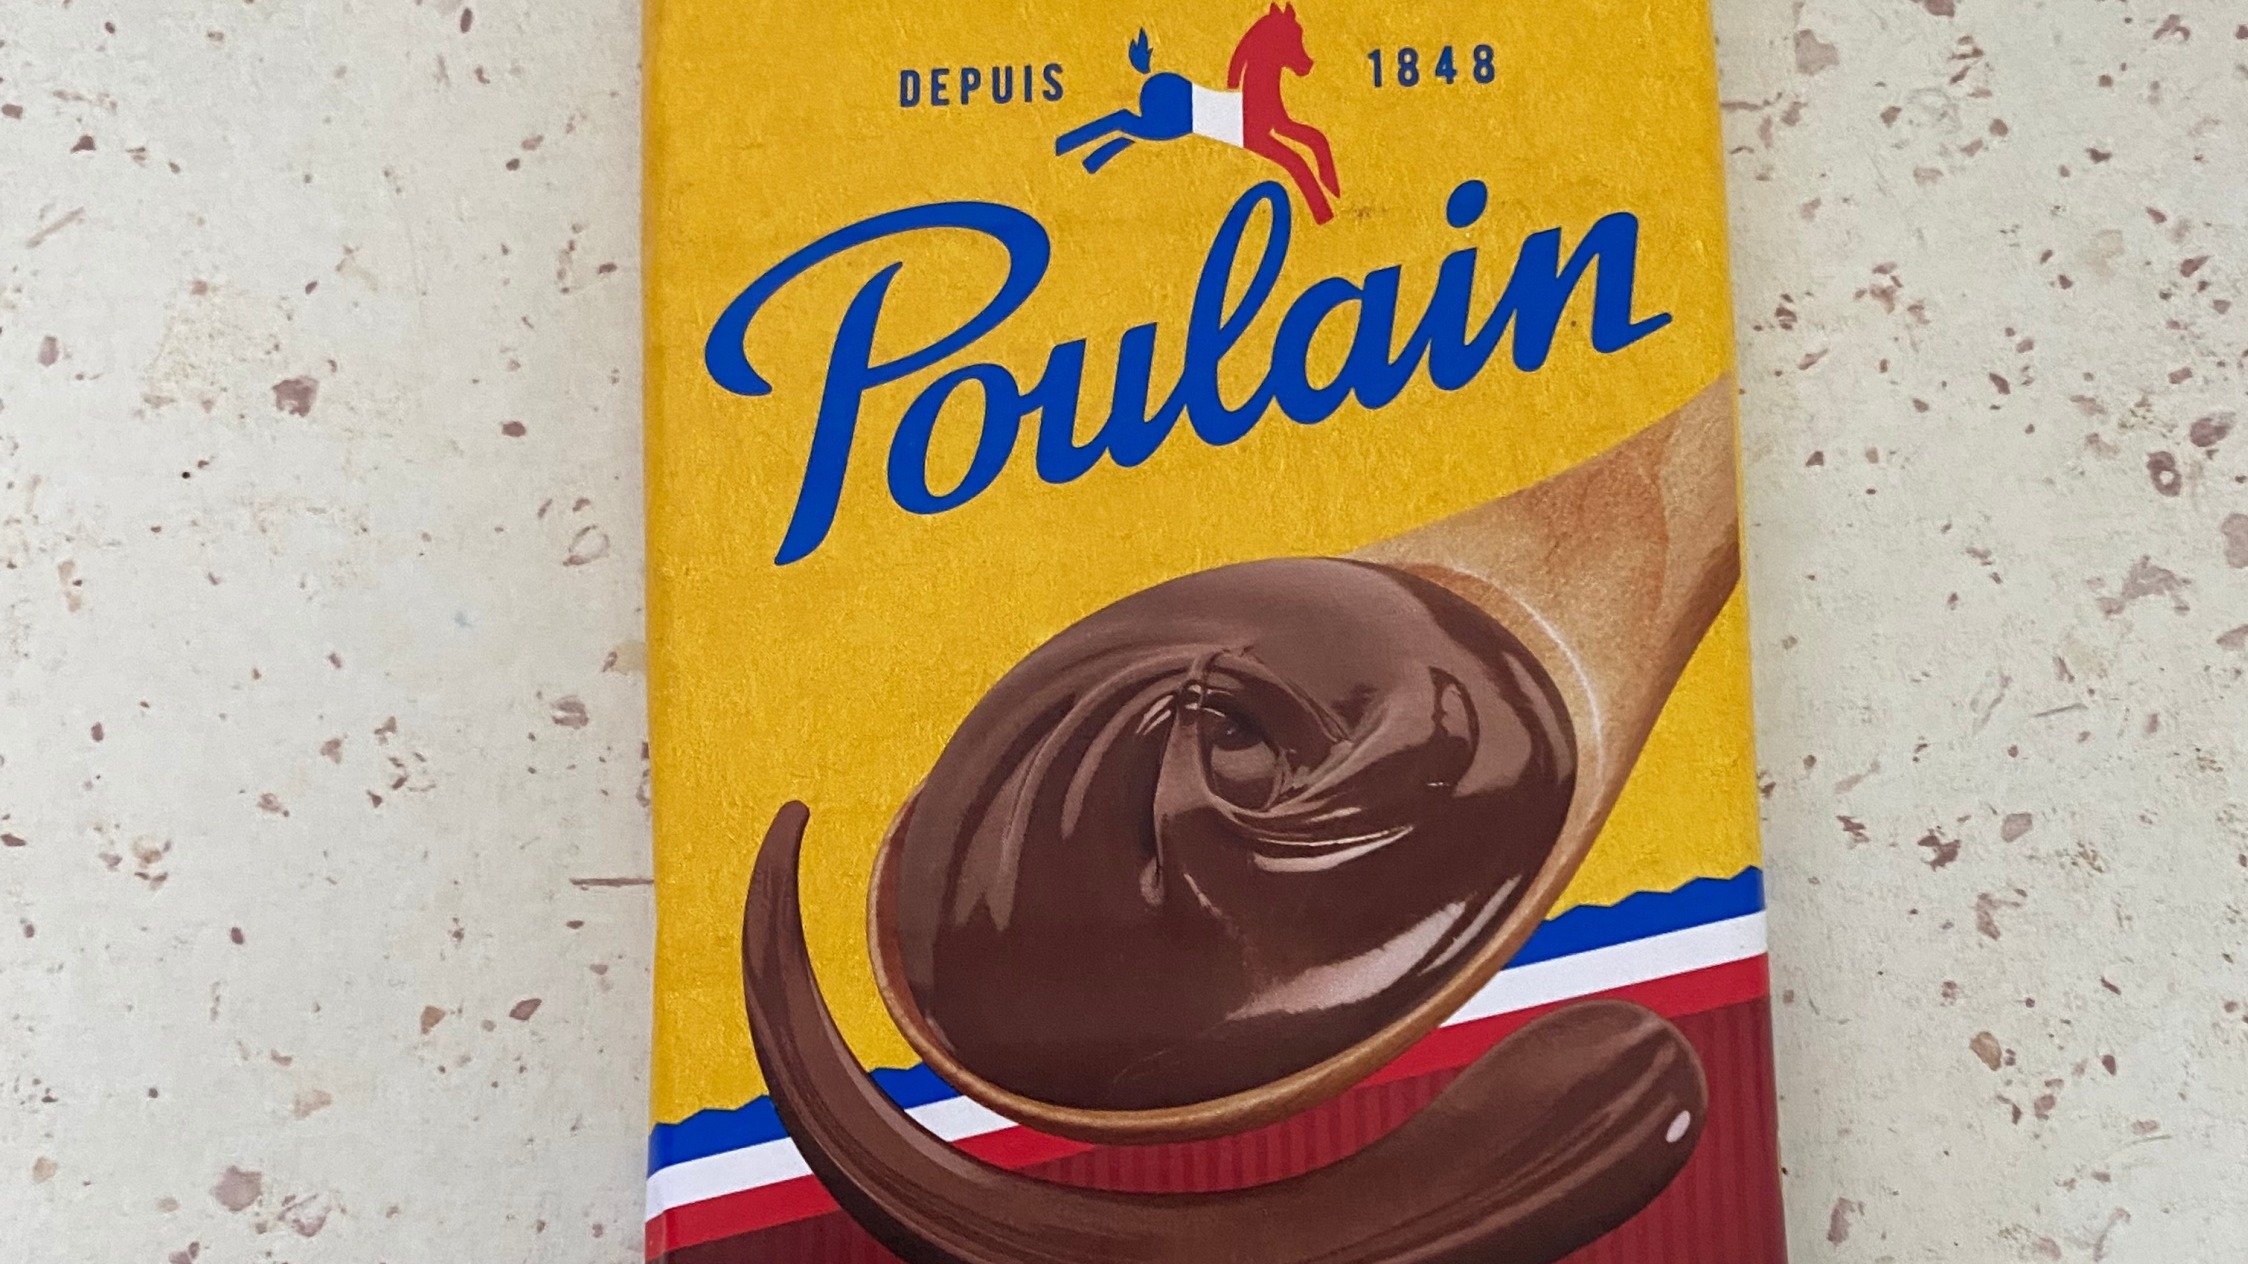 Les chocolats Poulain quittent leur berceau historique de Blois, une centaine d’emplois menacés